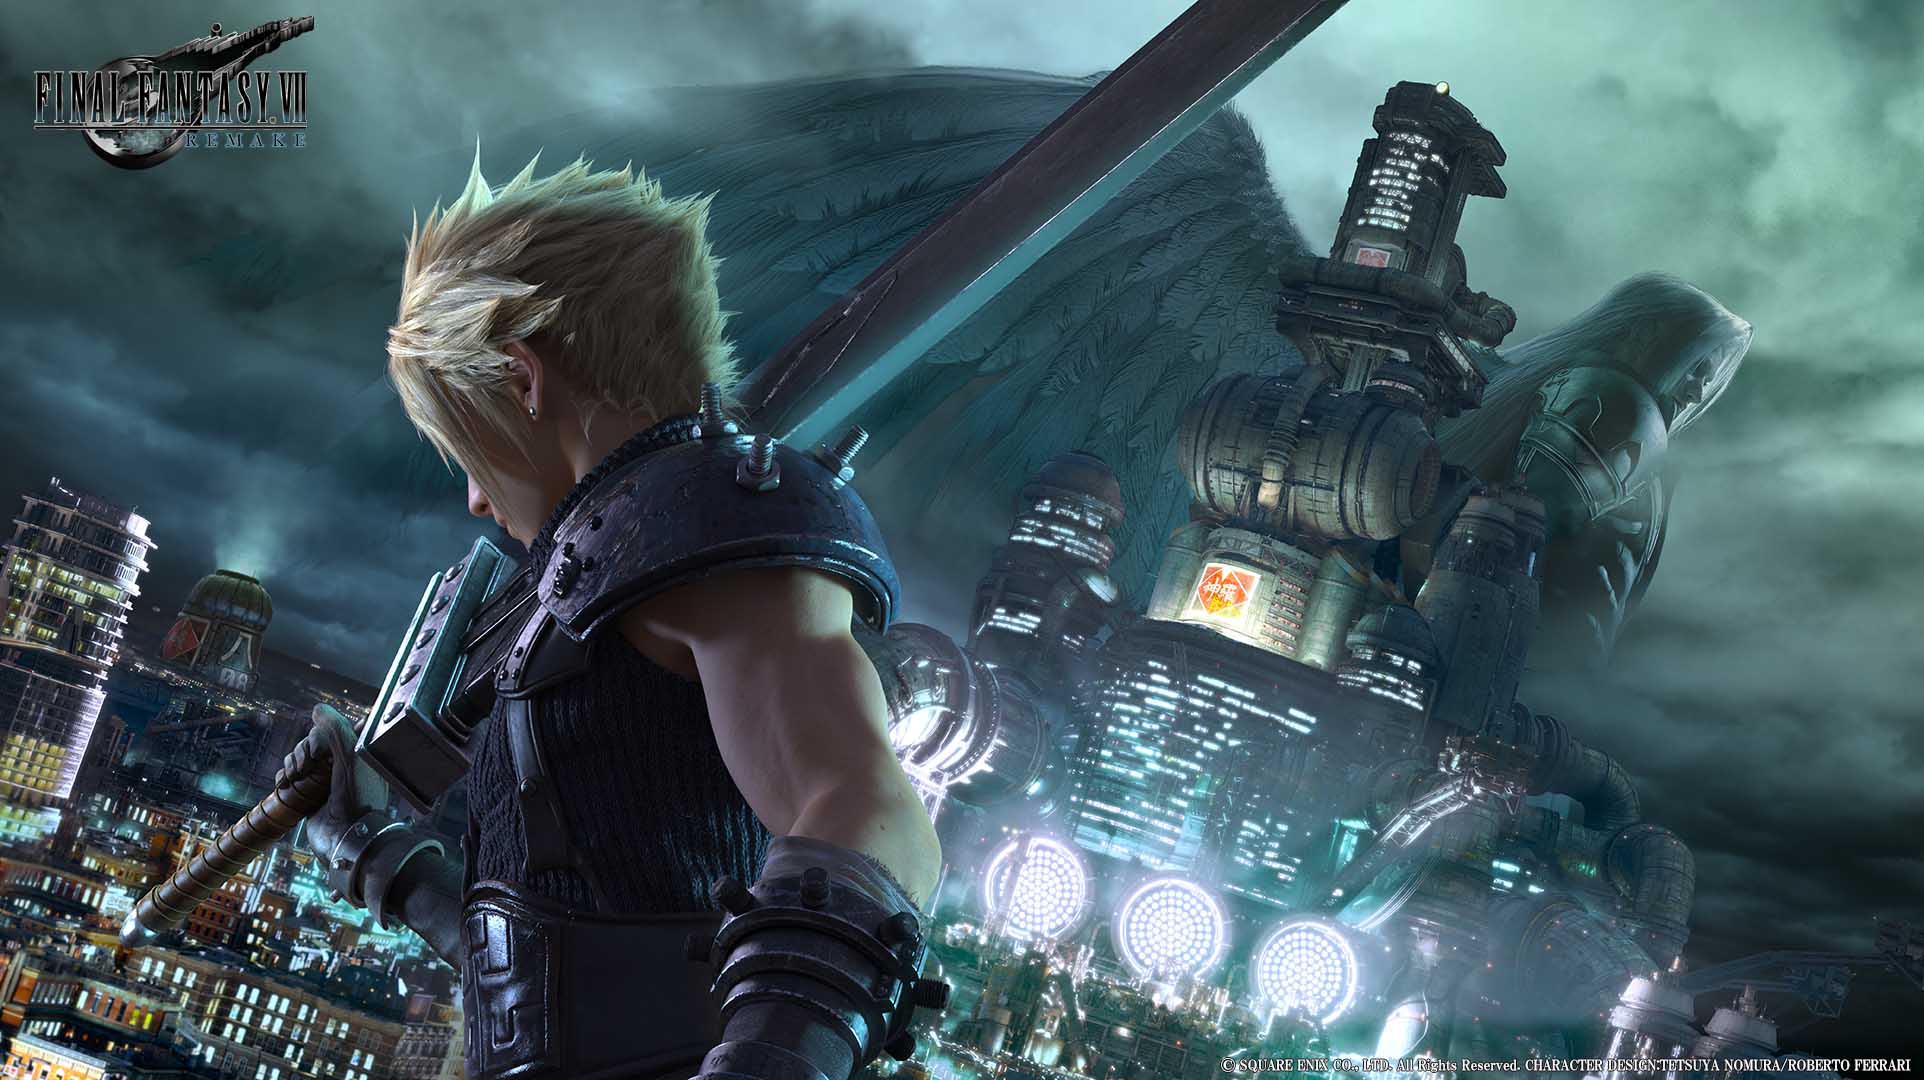 صورة يمكنك تحميل Demo لعبة Final Fantasy VII Remake الآن !